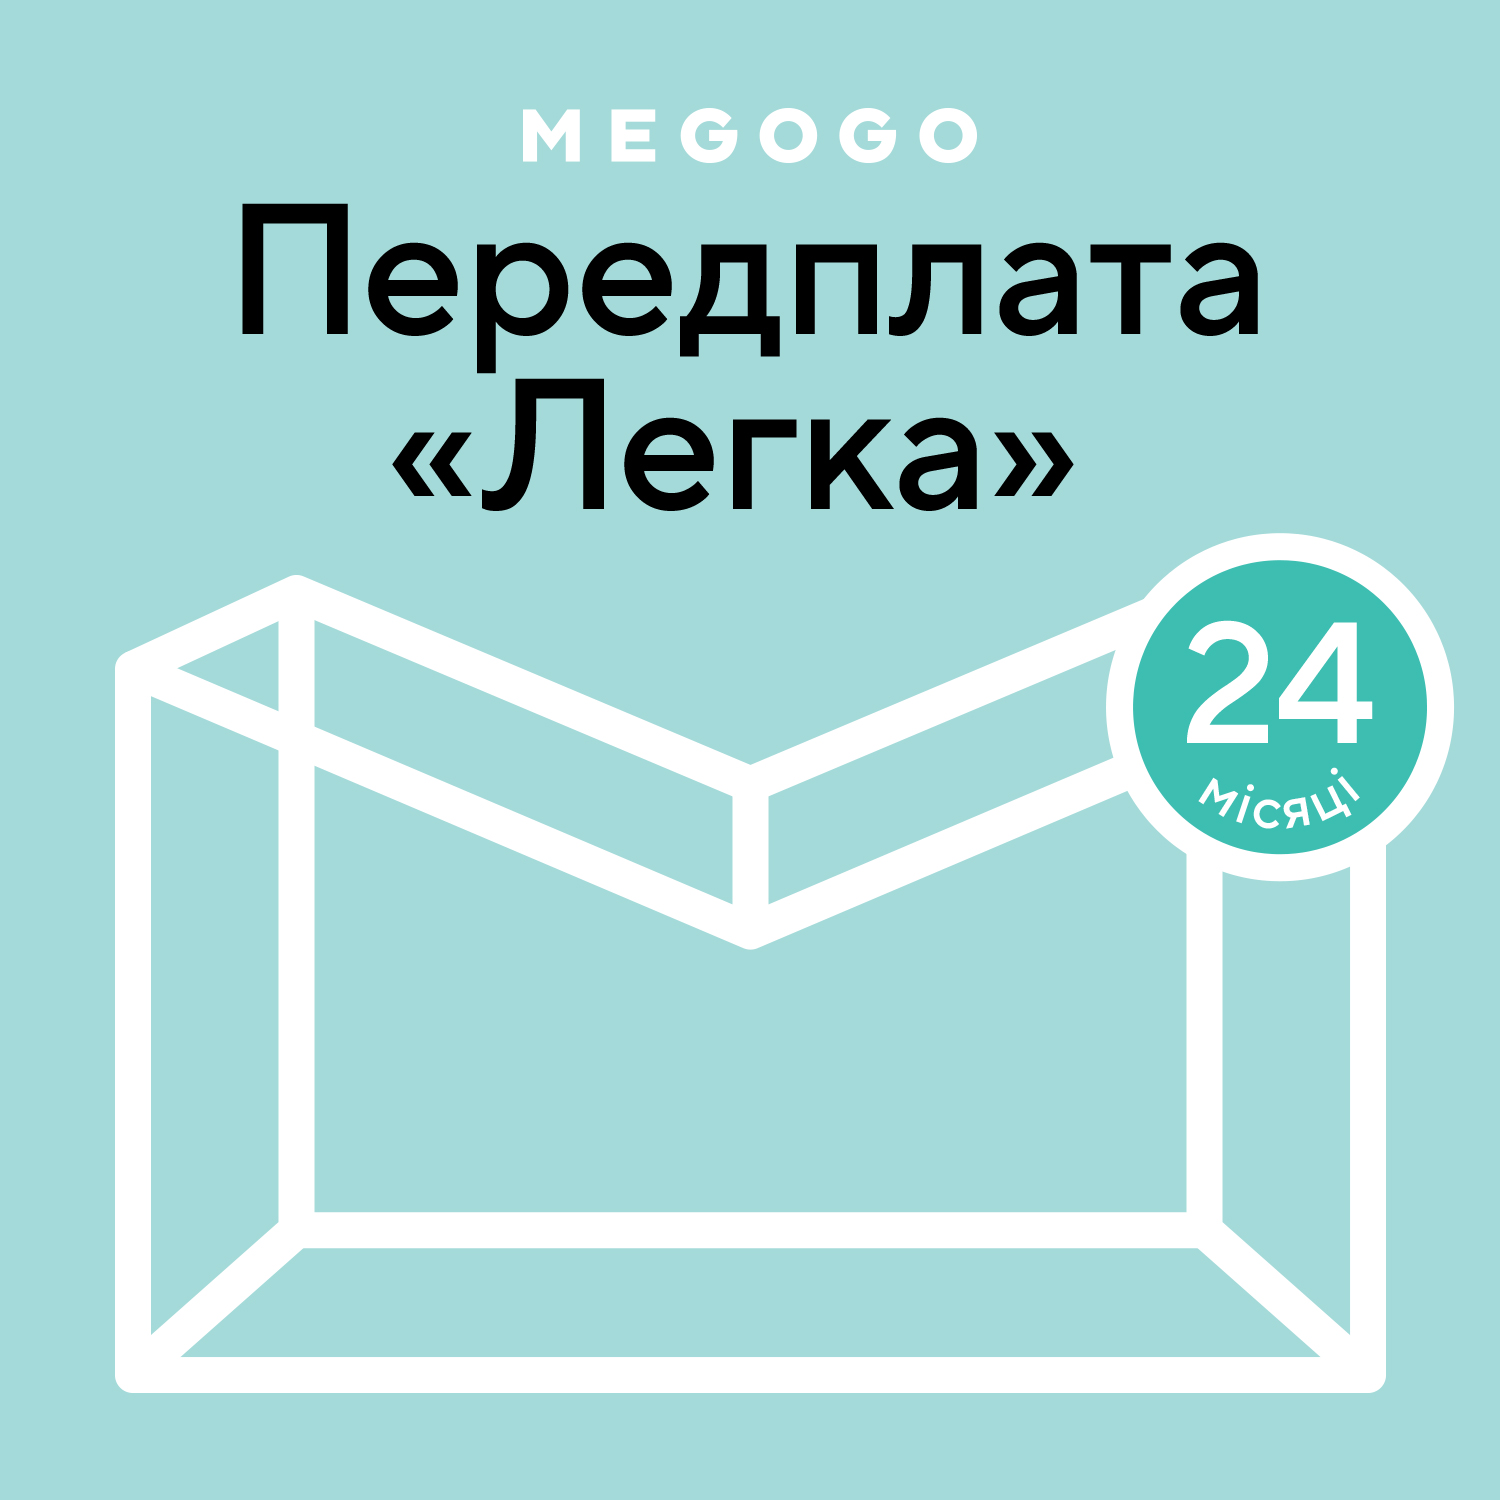 MEGOGO «Кіно і ТБ: Легка» 24 міс в Києві